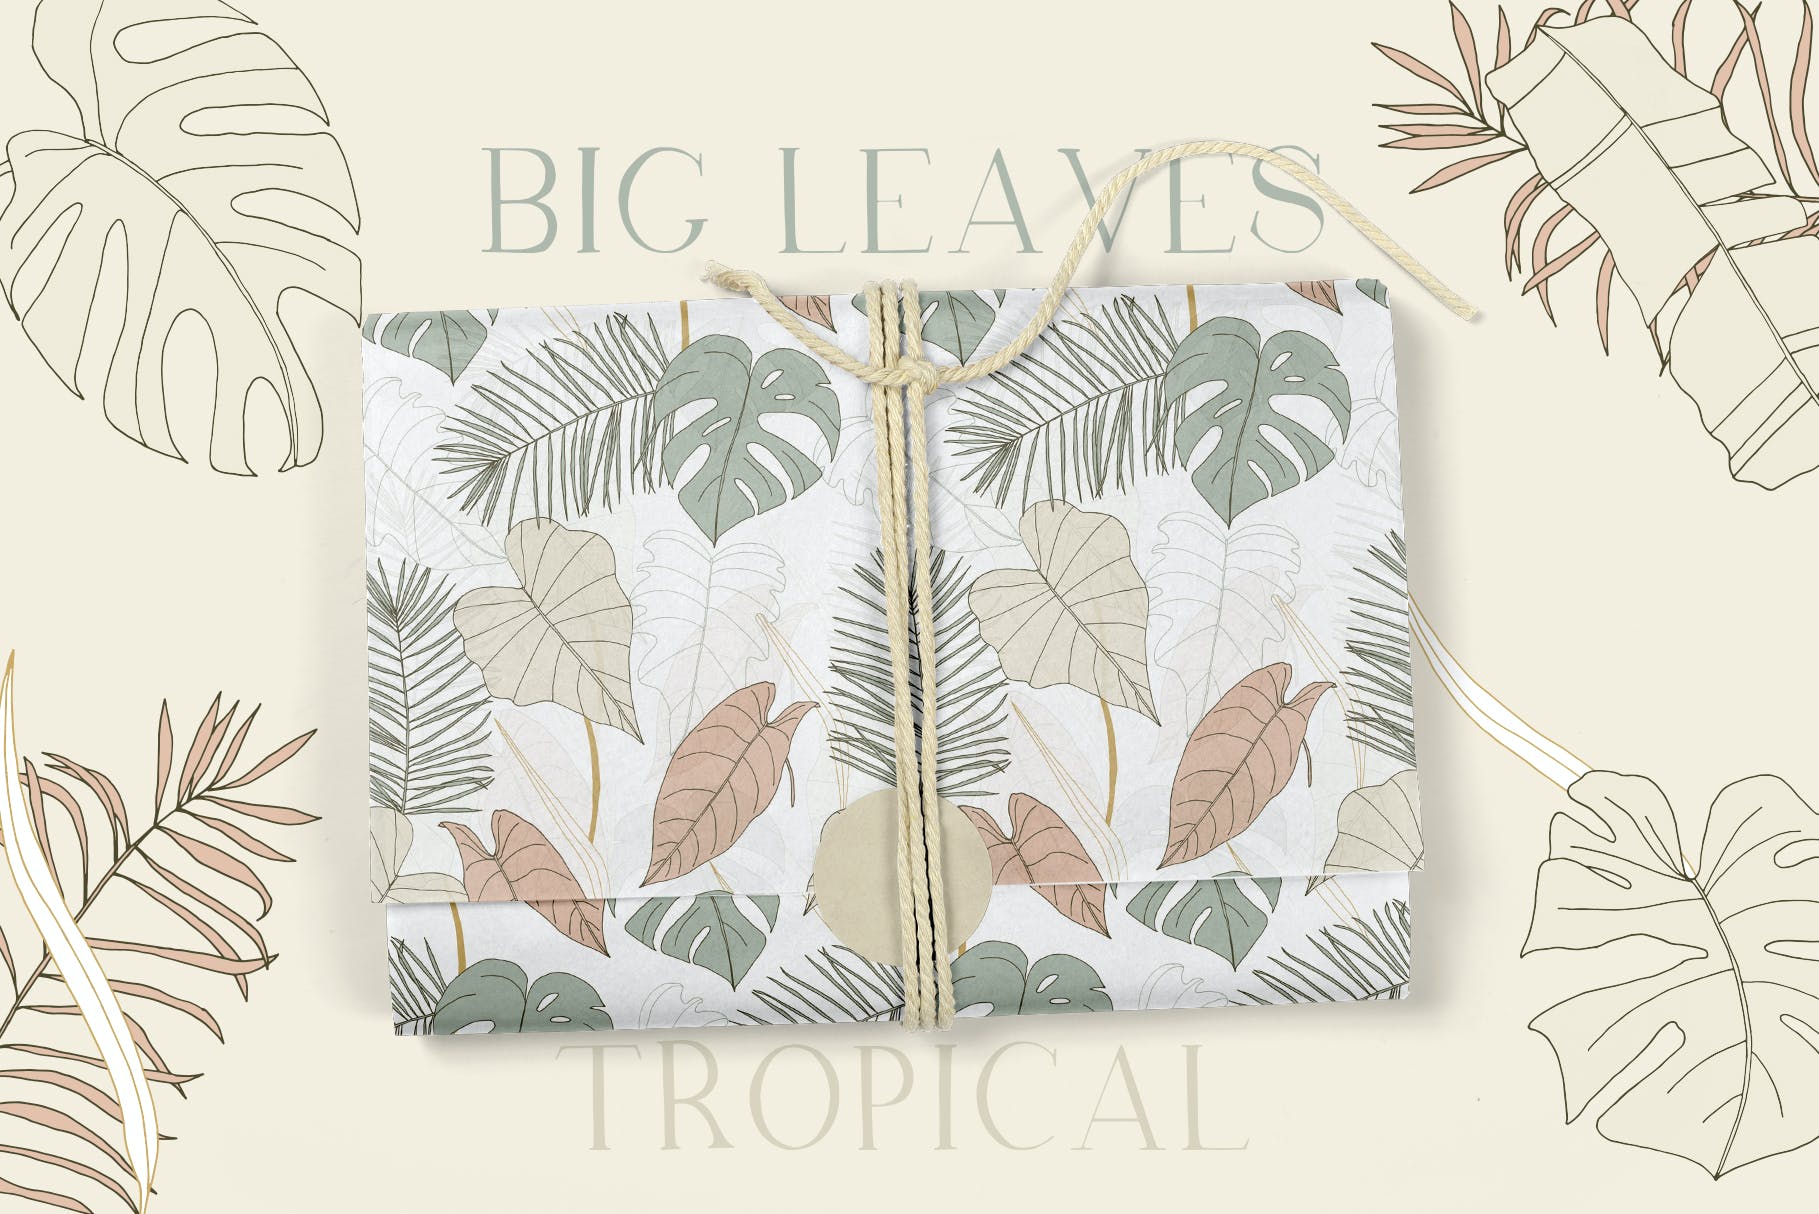 植物叶子热带图案素材 Big Leaves – Tropical Patterns 图片素材 第4张